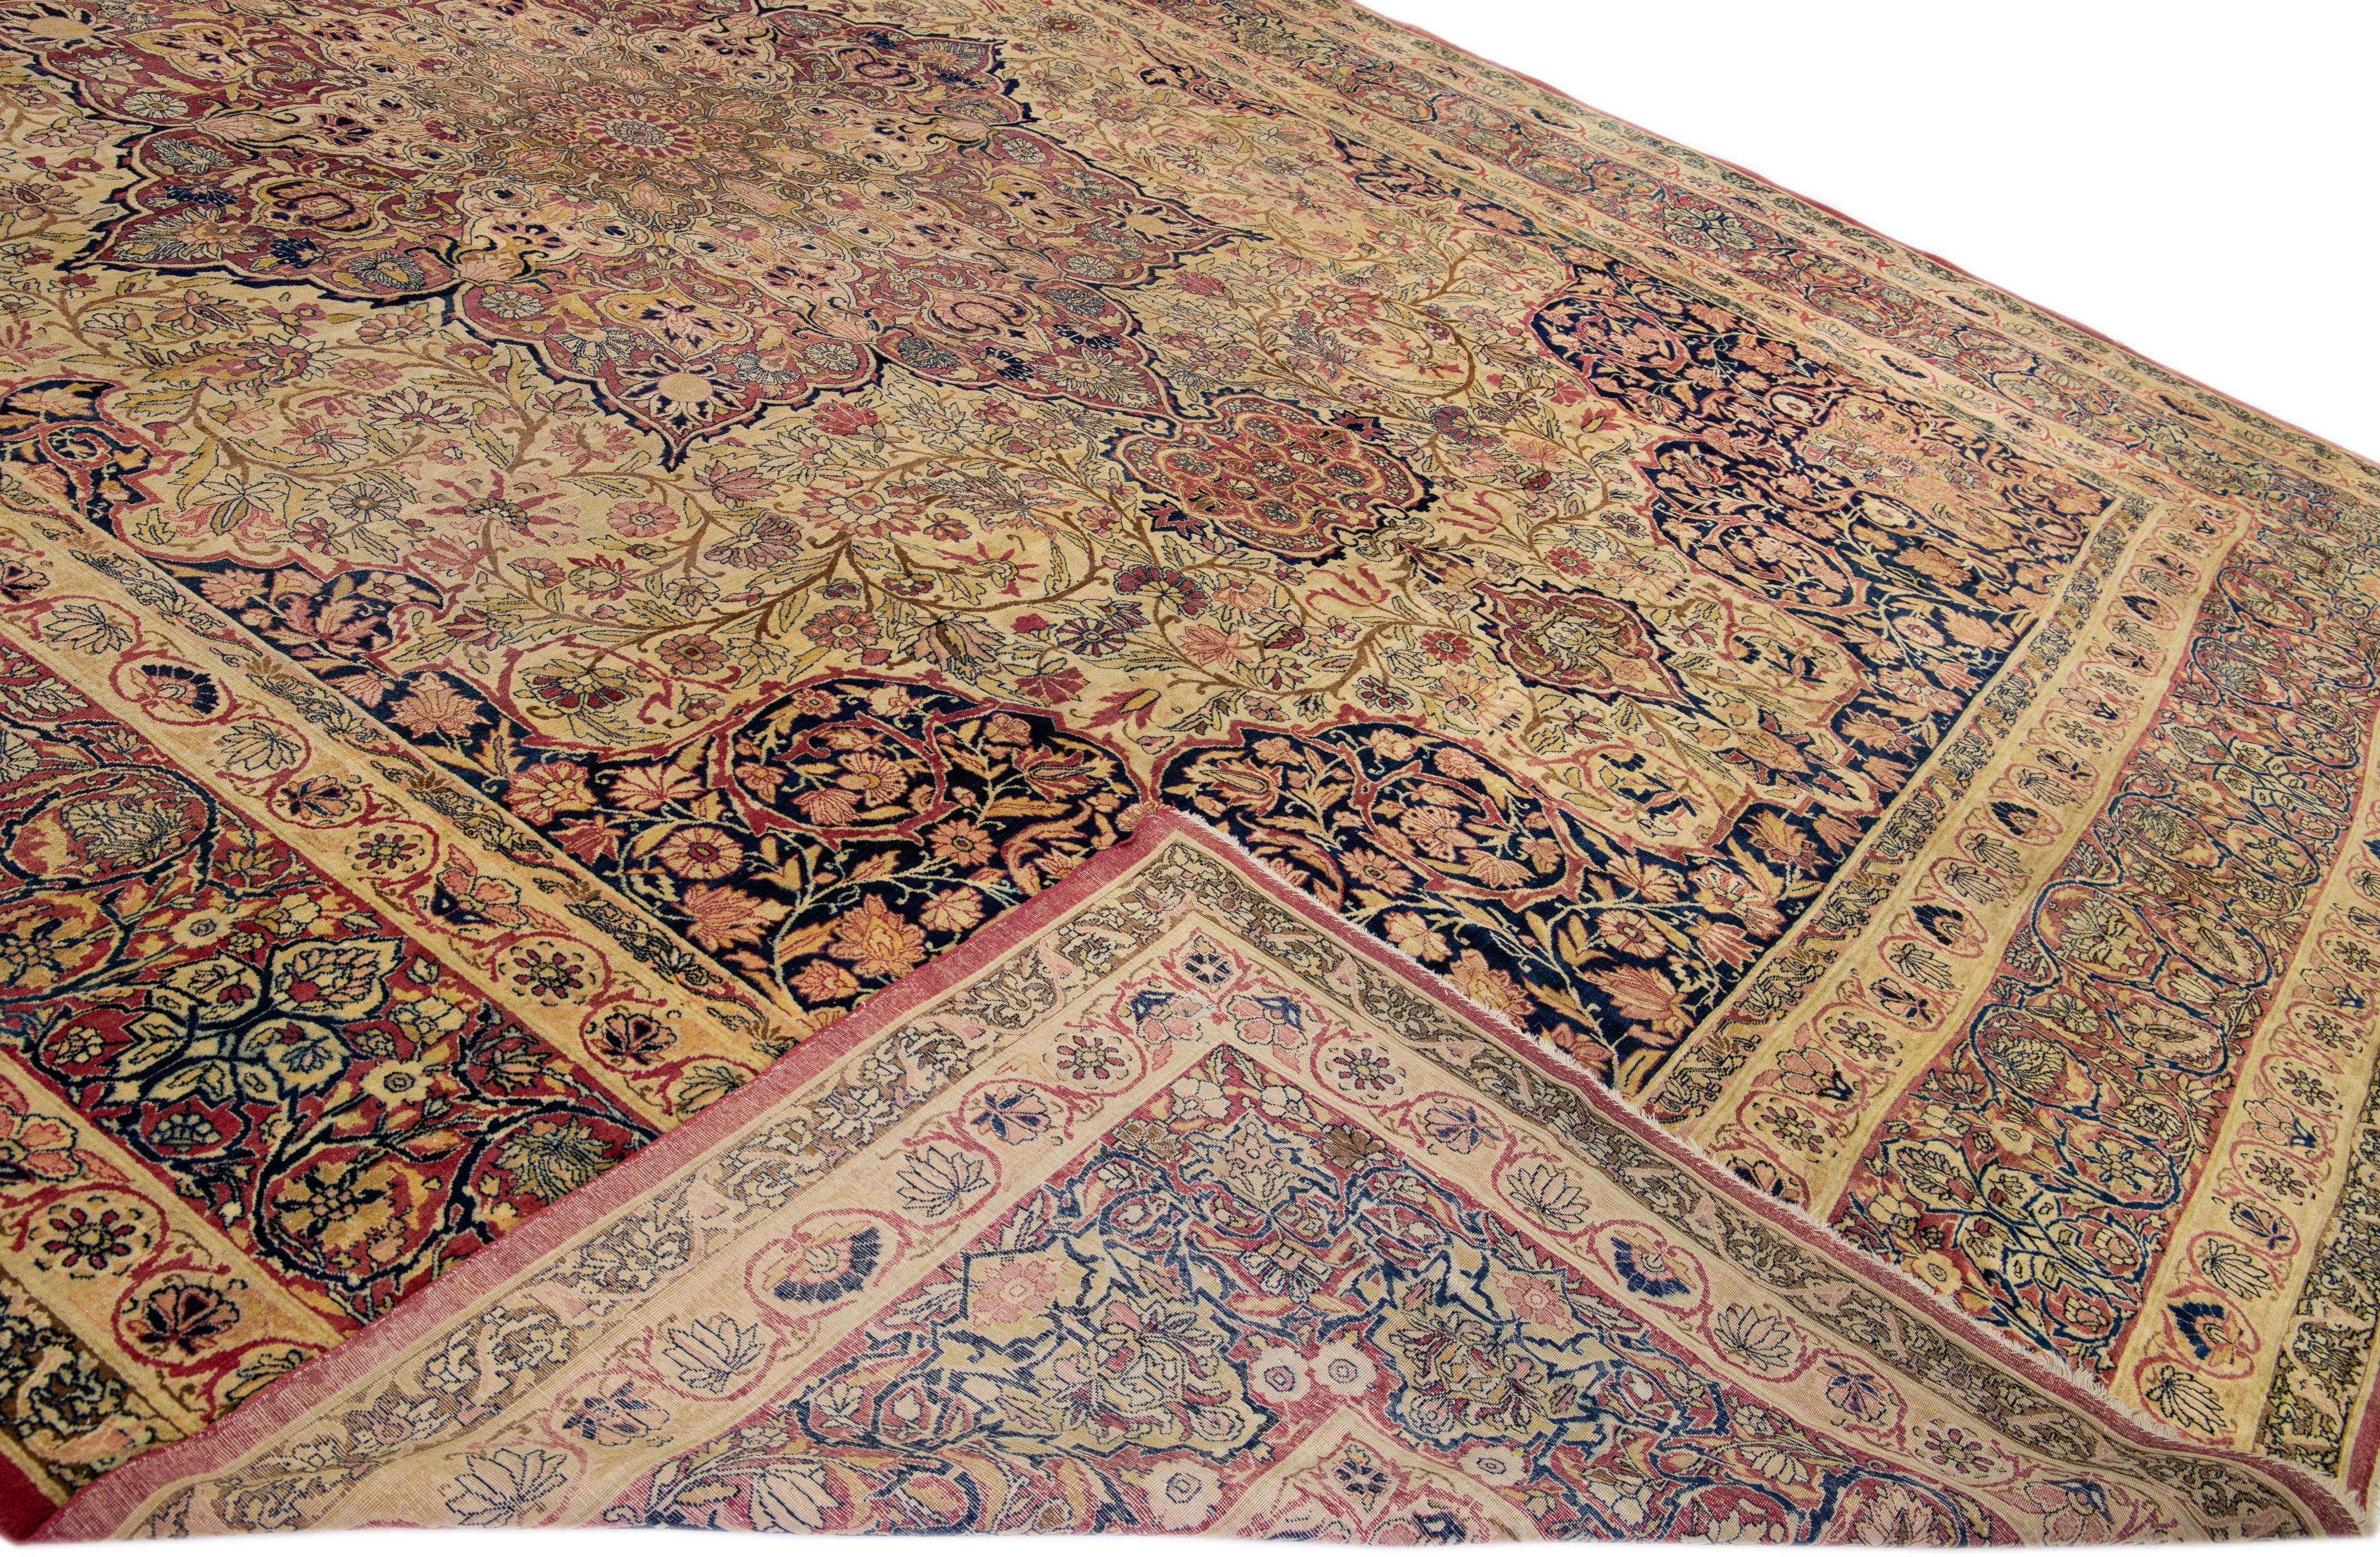 Schöner antiker, handgeknüpfter Wollteppich aus Kerman mit einem beige-roten Feld. Dieser Perserteppich hat mehrfarbige Akzente in einem prächtigen Allover-Rosettenmuster.

Dieser Teppich misst: 14' x 19'9